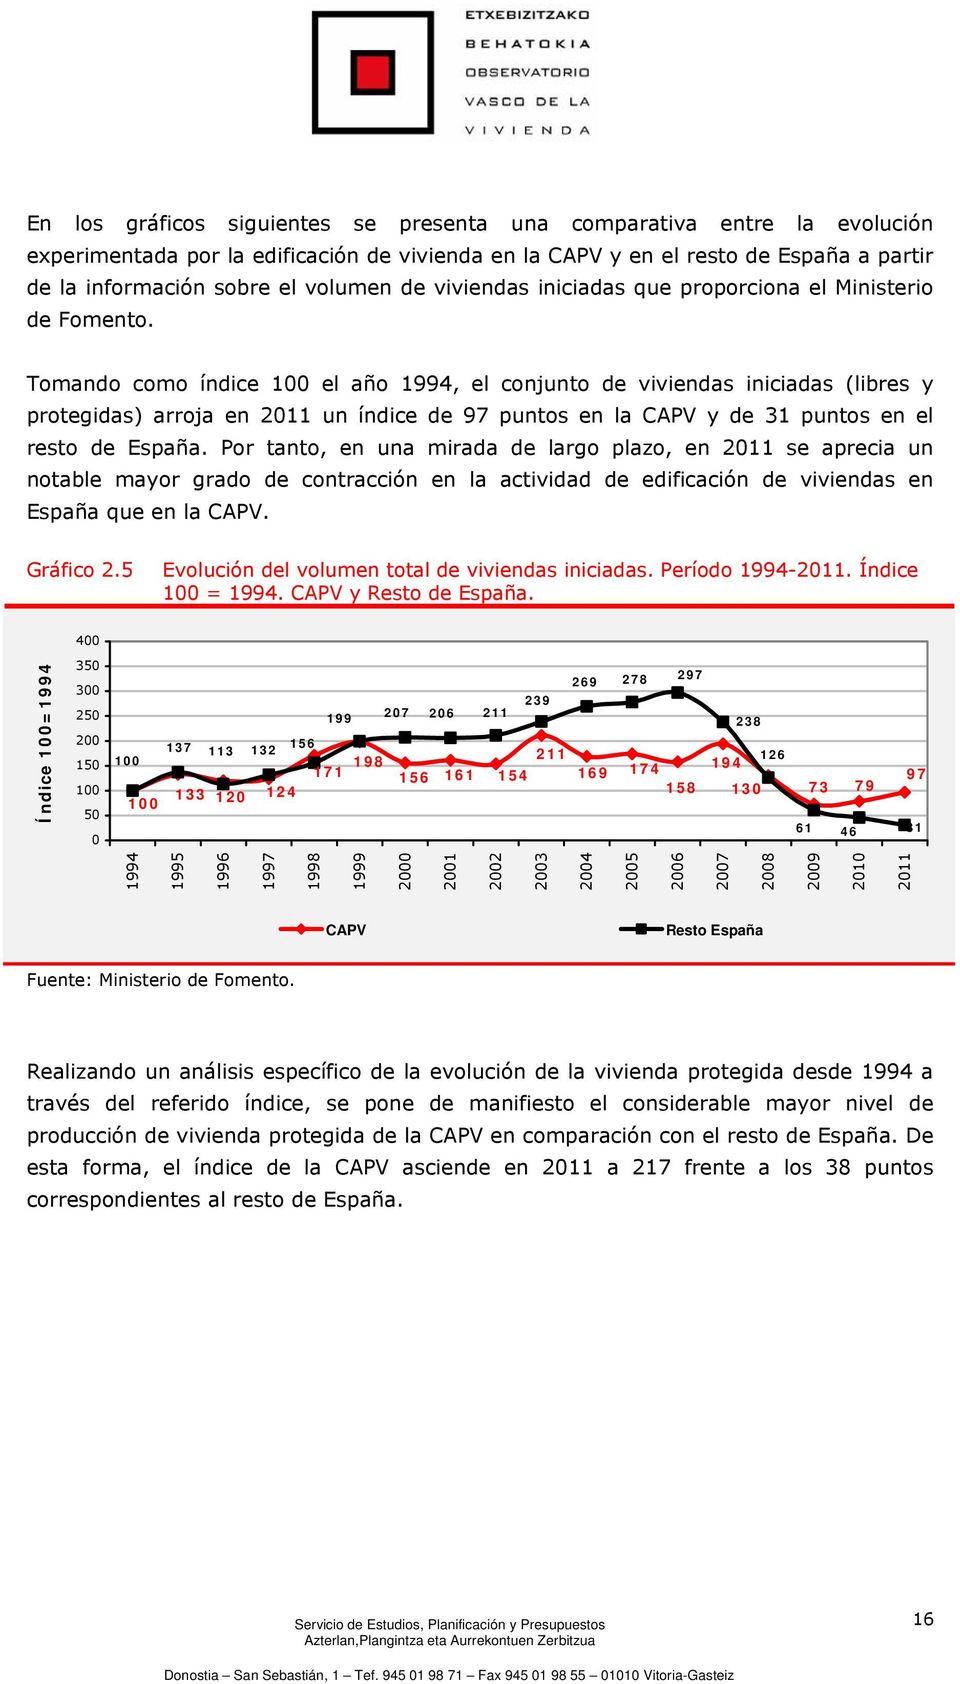 Tomando como índice 100 el año 1994, el conjunto de viviendas iniciadas (libres y protegidas) arroja en 2011 un índice de 97 puntos en la CAPV y de 31 puntos en el resto de España.